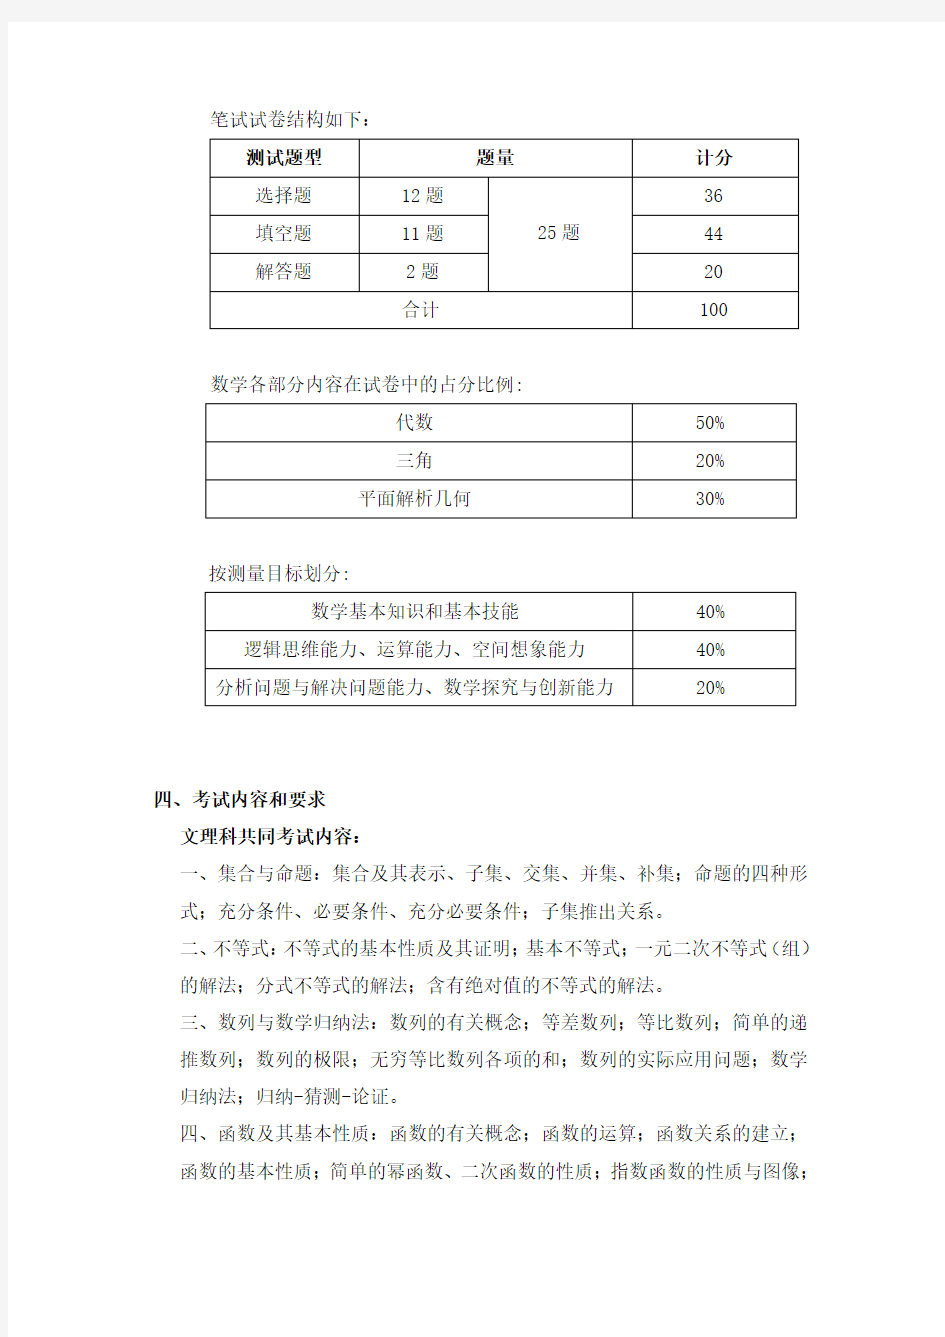 2019年上海交通大学留学生本科入学考试数学大纲样题